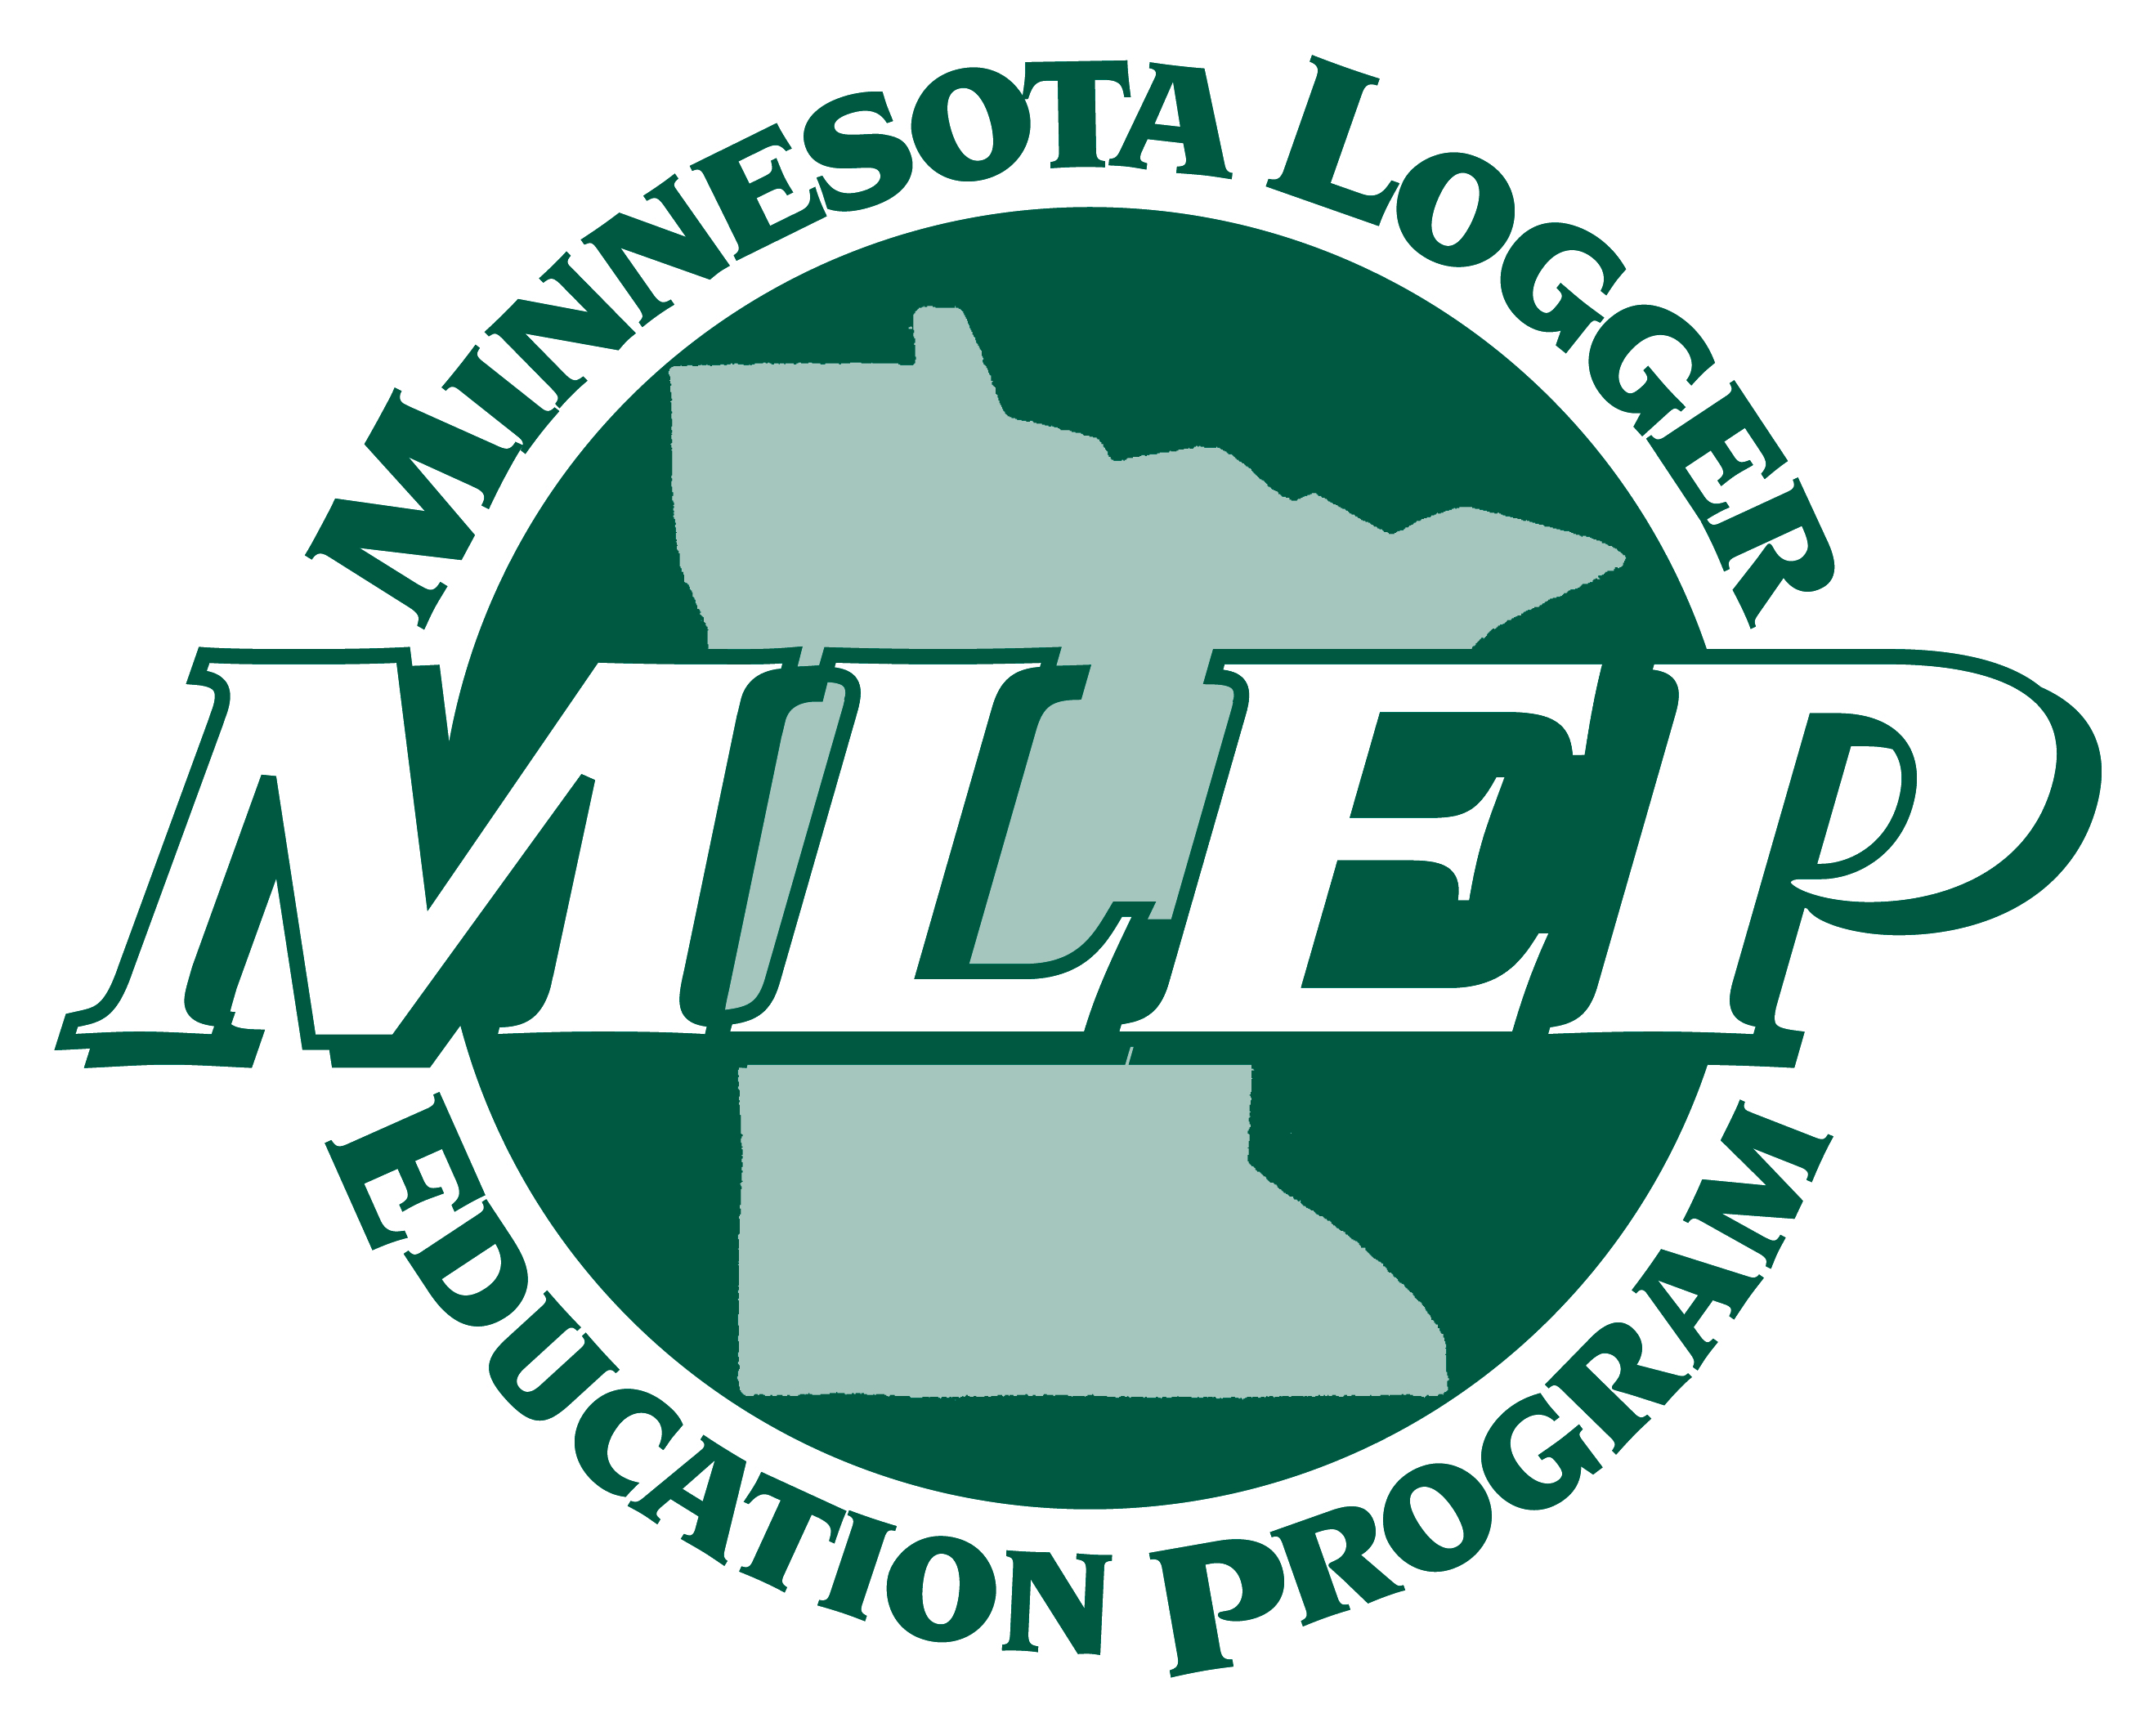 MLEP Logo